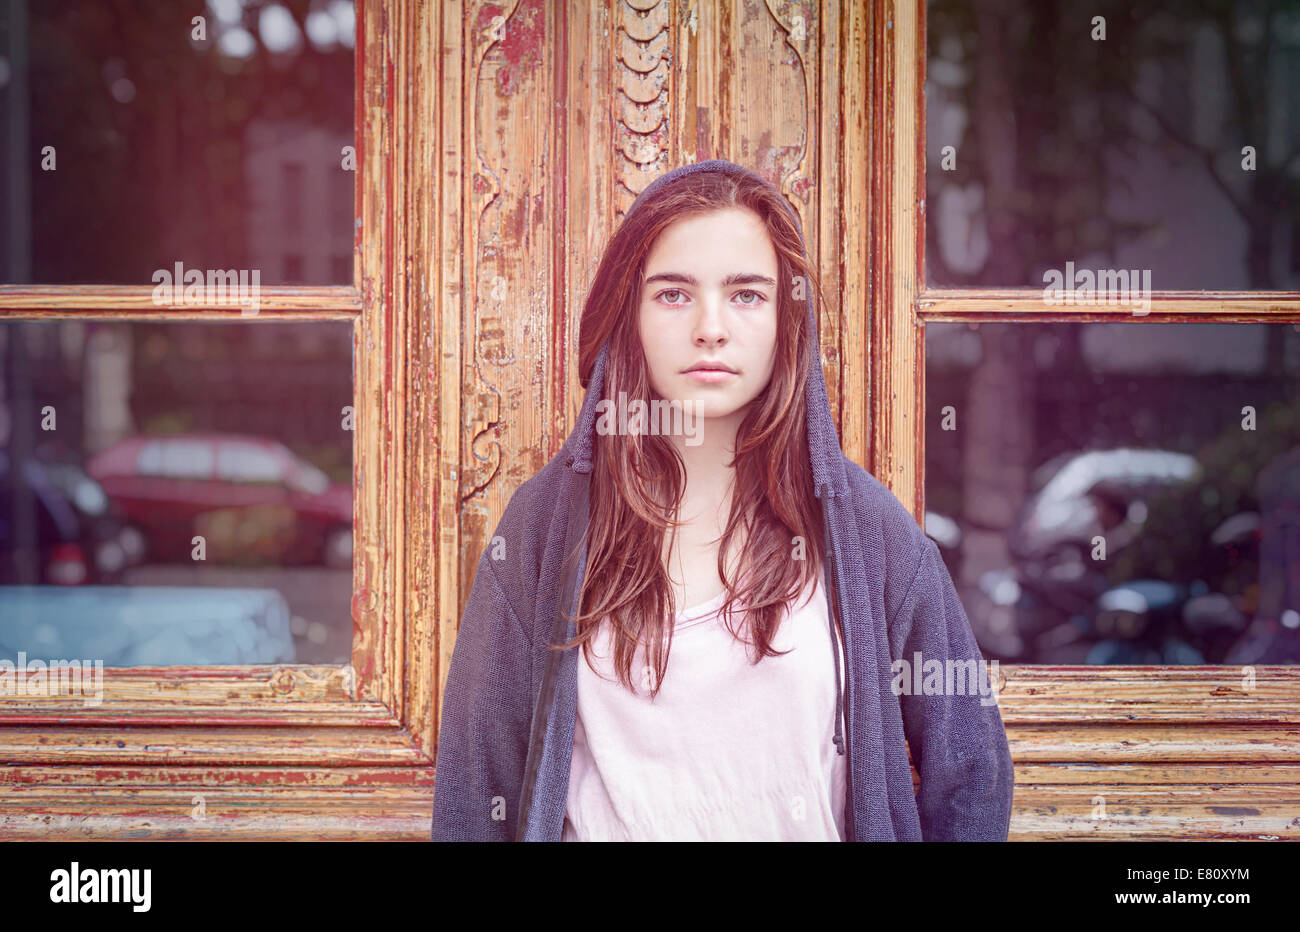 getönten Bild, Porträt von einem Teenager Mädchen vor einer alten Holztür mit Windows. Stockfoto